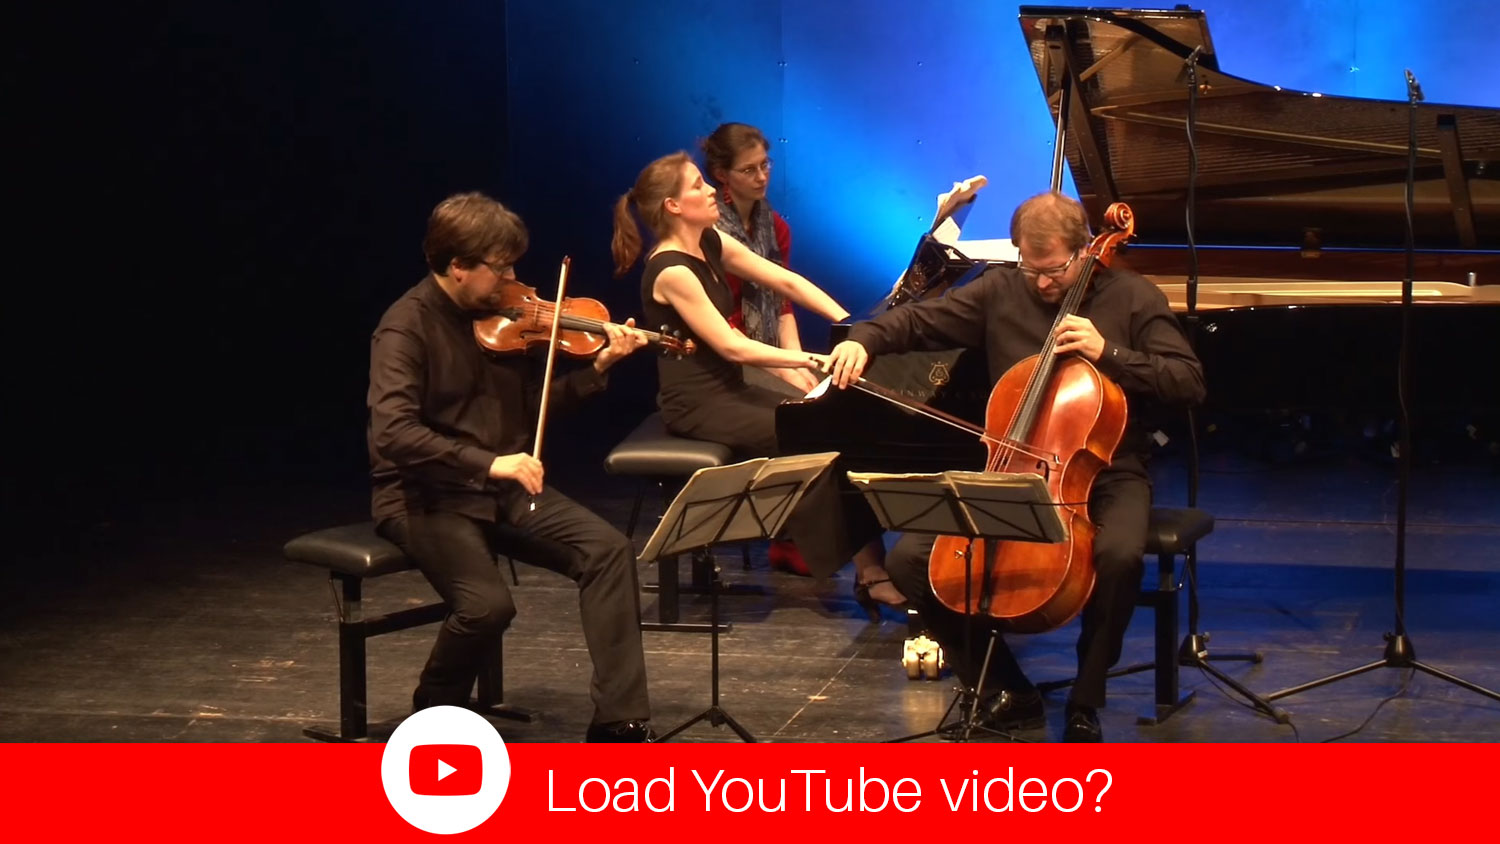 YouTube Video Morgenstern Trio - Ravel-Trio a minor